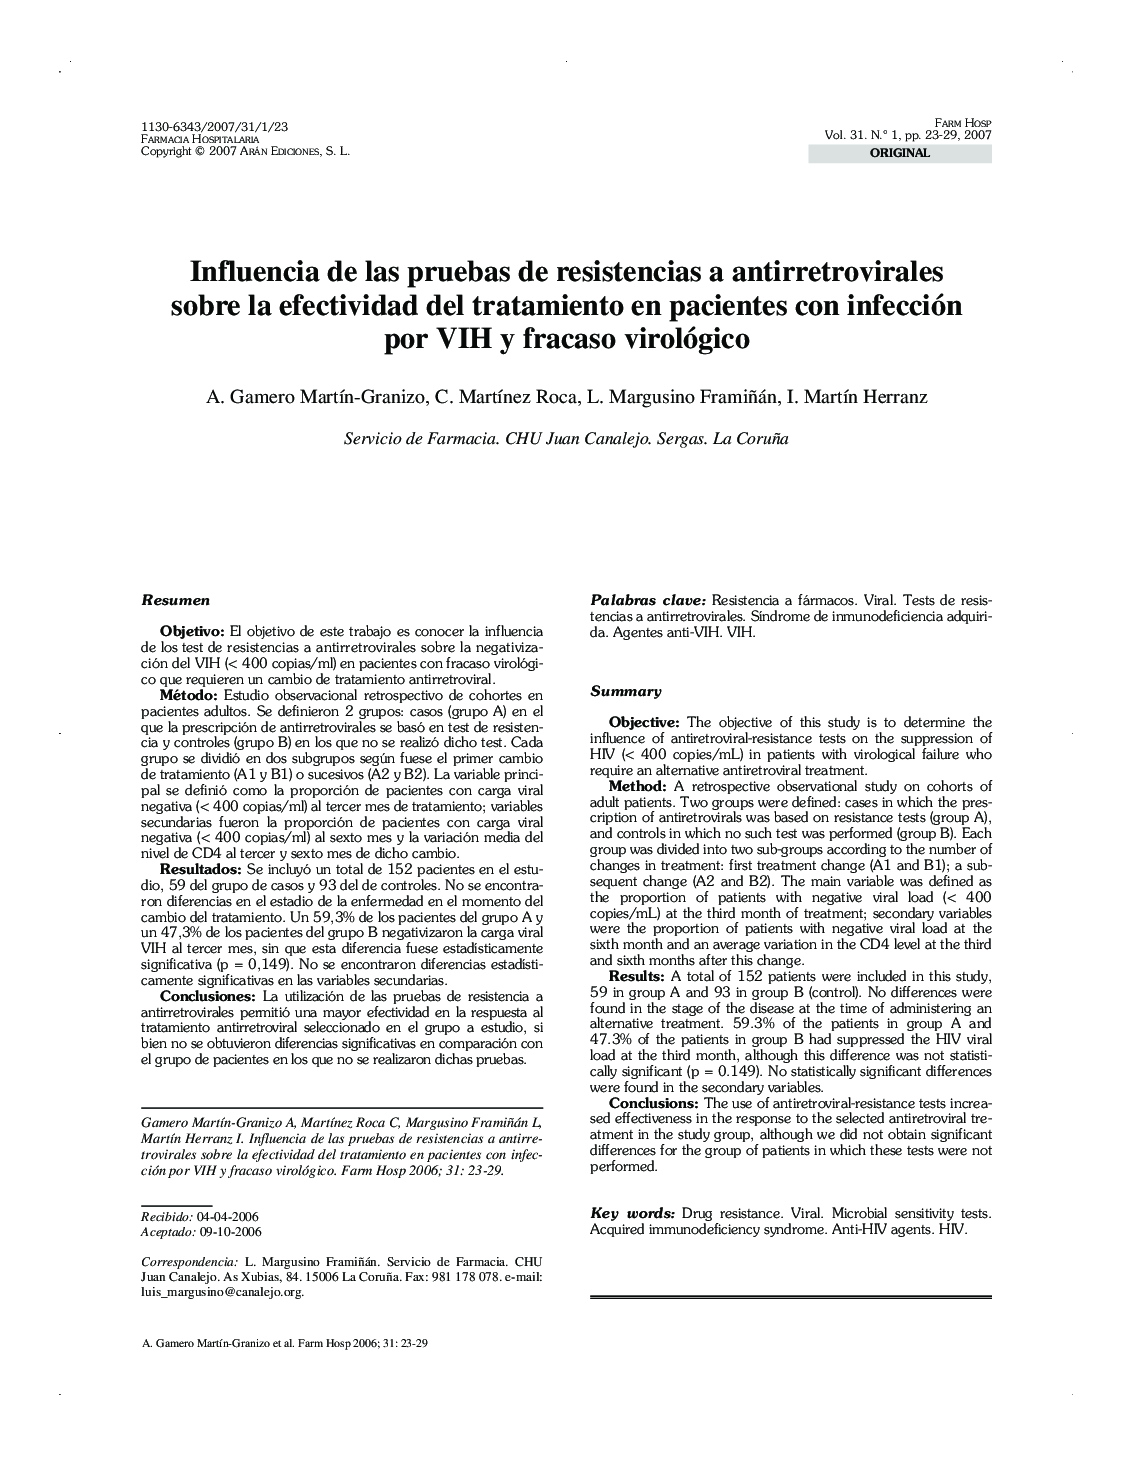 Influencia de las pruebas de resistencias a antirretrovirales sobre la efectividad del tratamiento en pacientes con infección por VIH y fracaso virológico